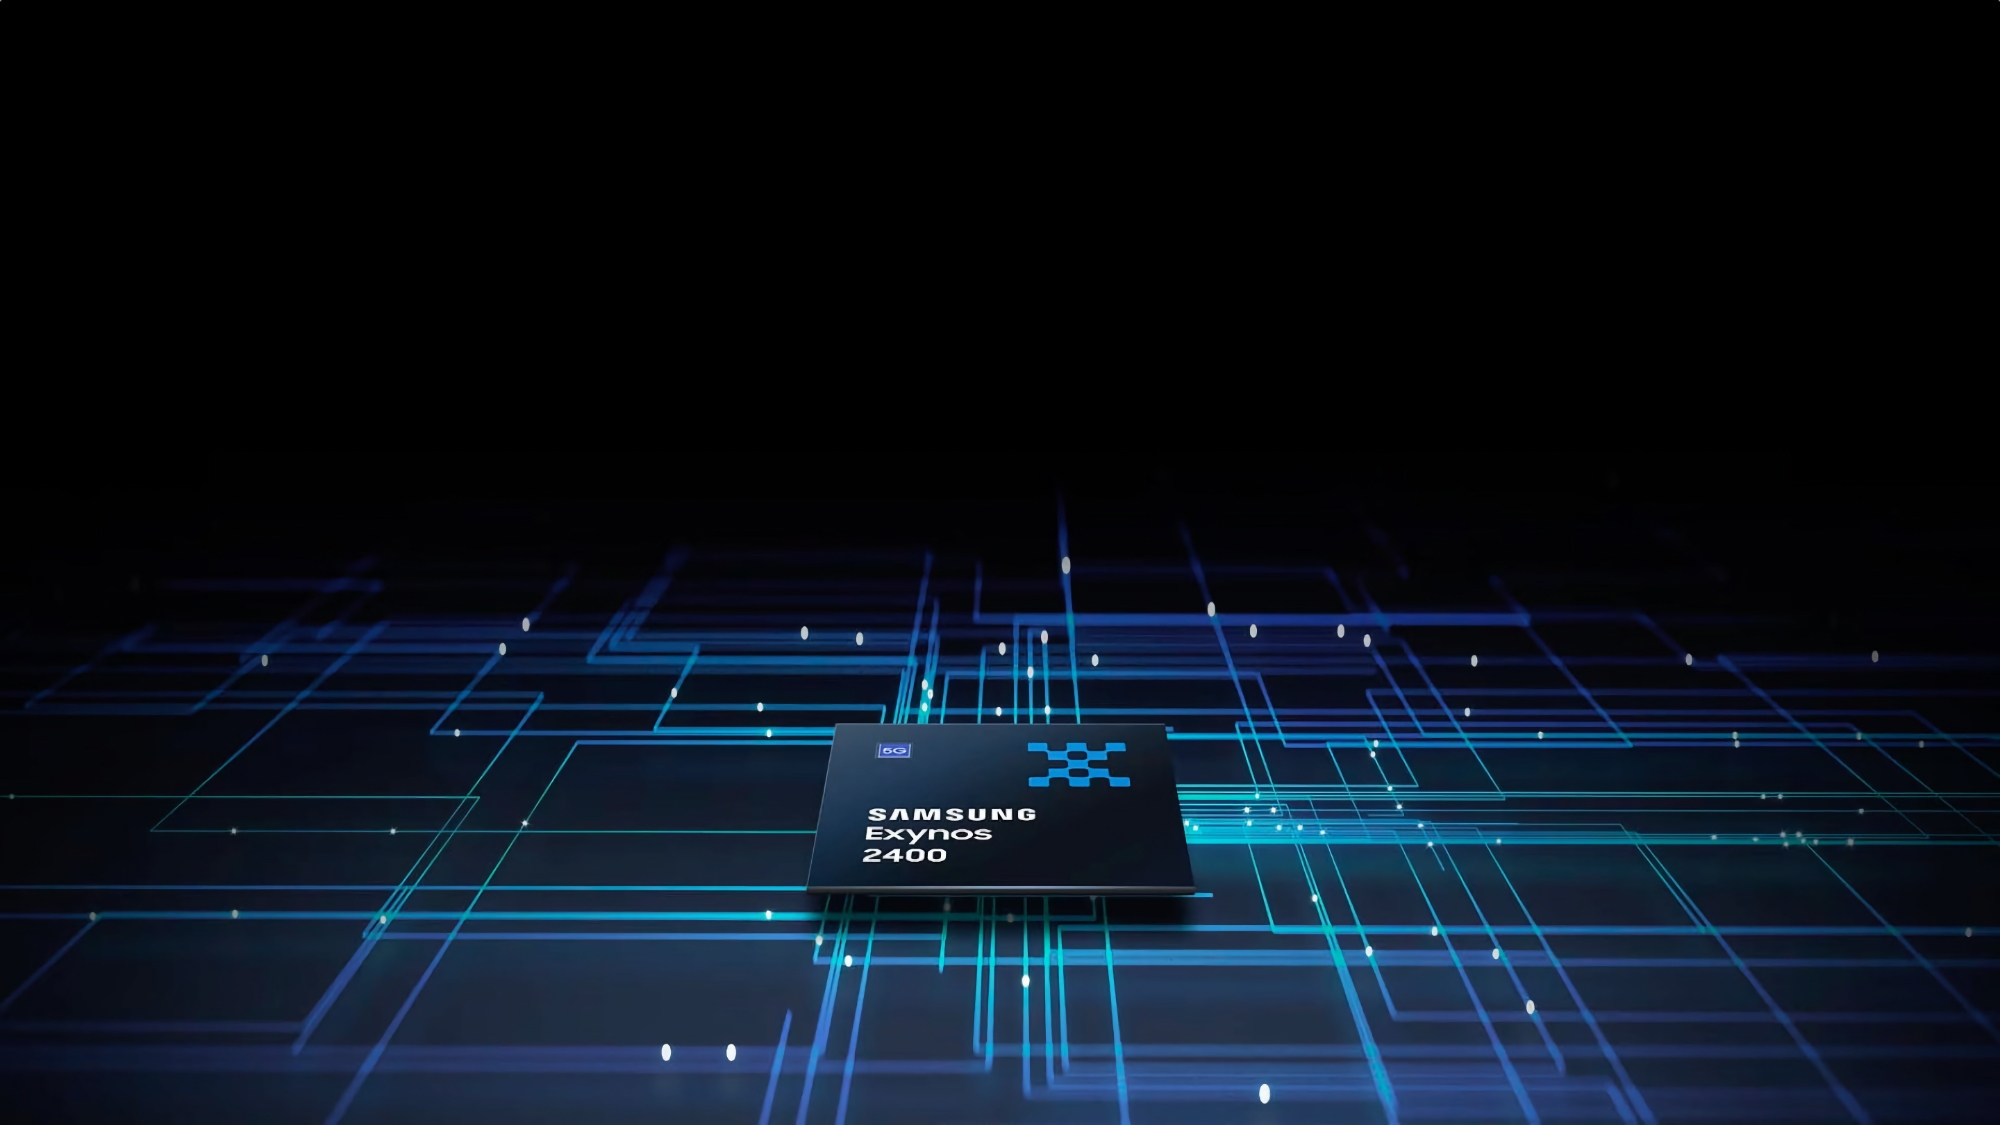 10 CPU-kernen en Xclipse 940 grafische processor: Samsung heeft details onthuld over zijn vlaggenschip Exynos 2400 chip